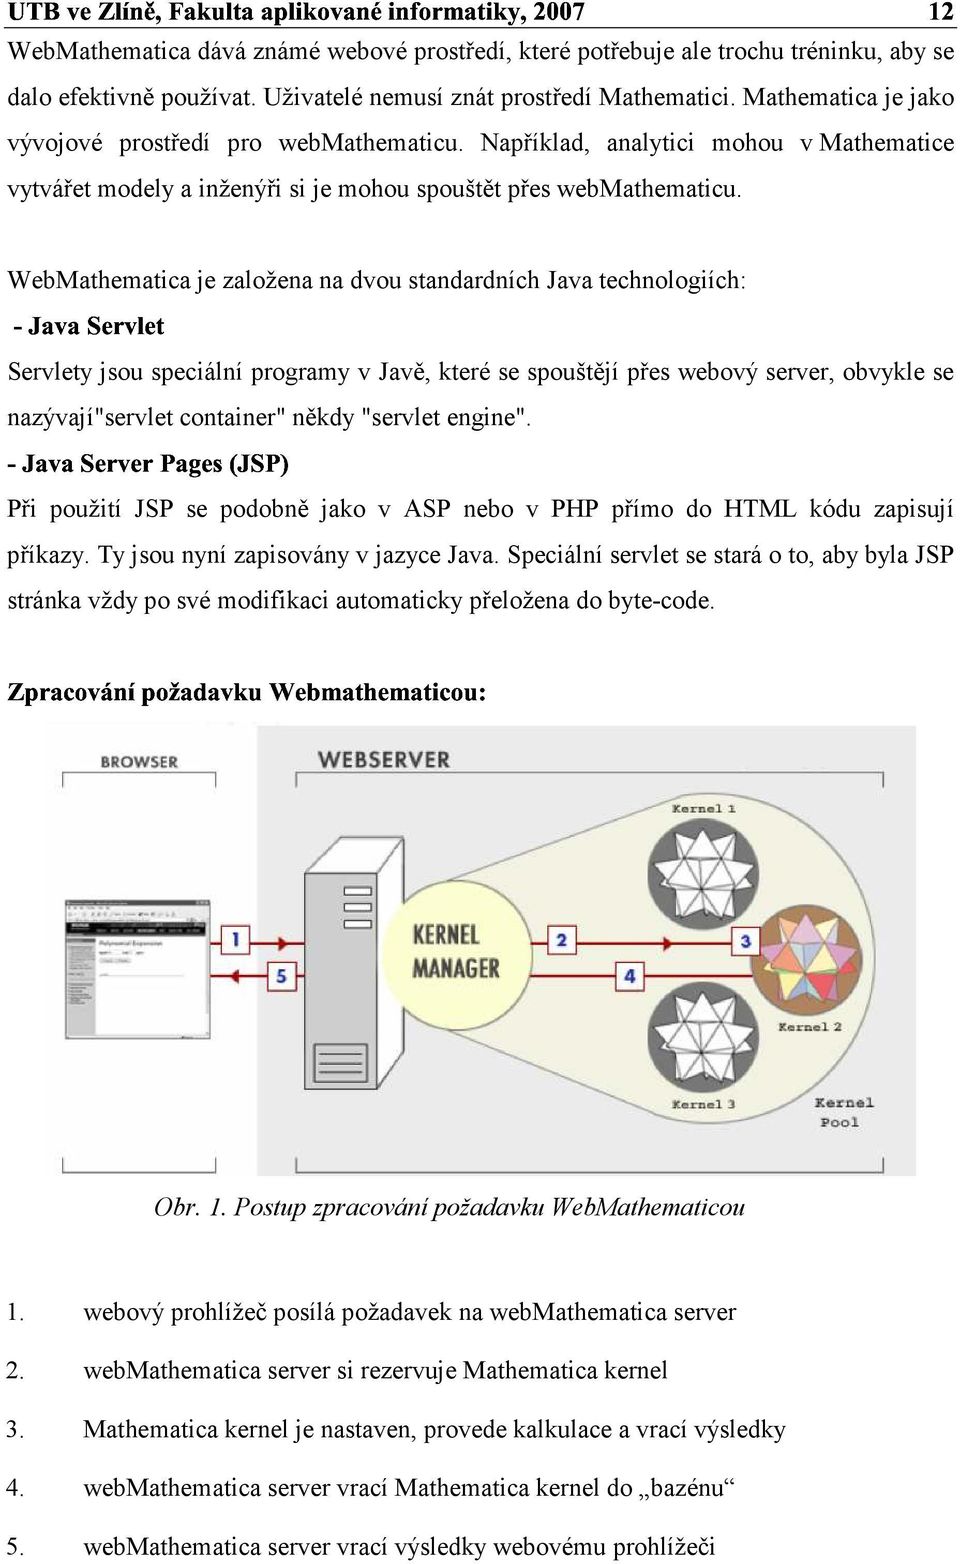 WebMathematica je založena na dvou standardních Java technologiích: Servlety jsou seciální rogramy v Javě, které se souštějí řes webový server, obvykle se nazývají"servlet container" někdy "servlet